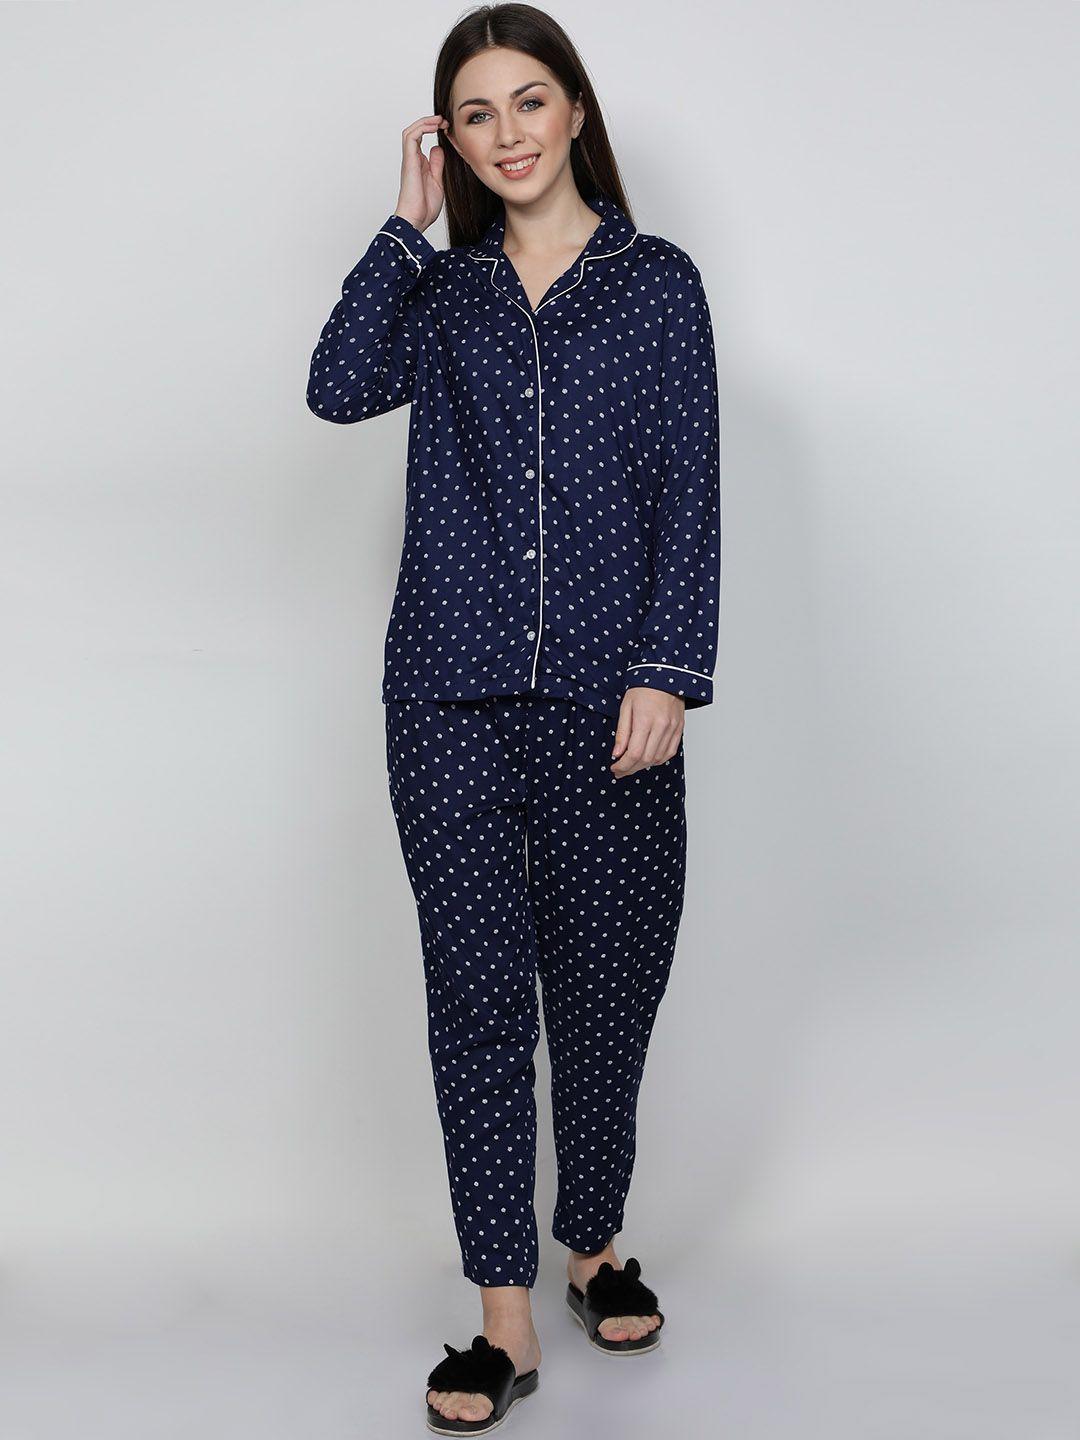 nuevosdamas-polka-dots-printed-night-suit